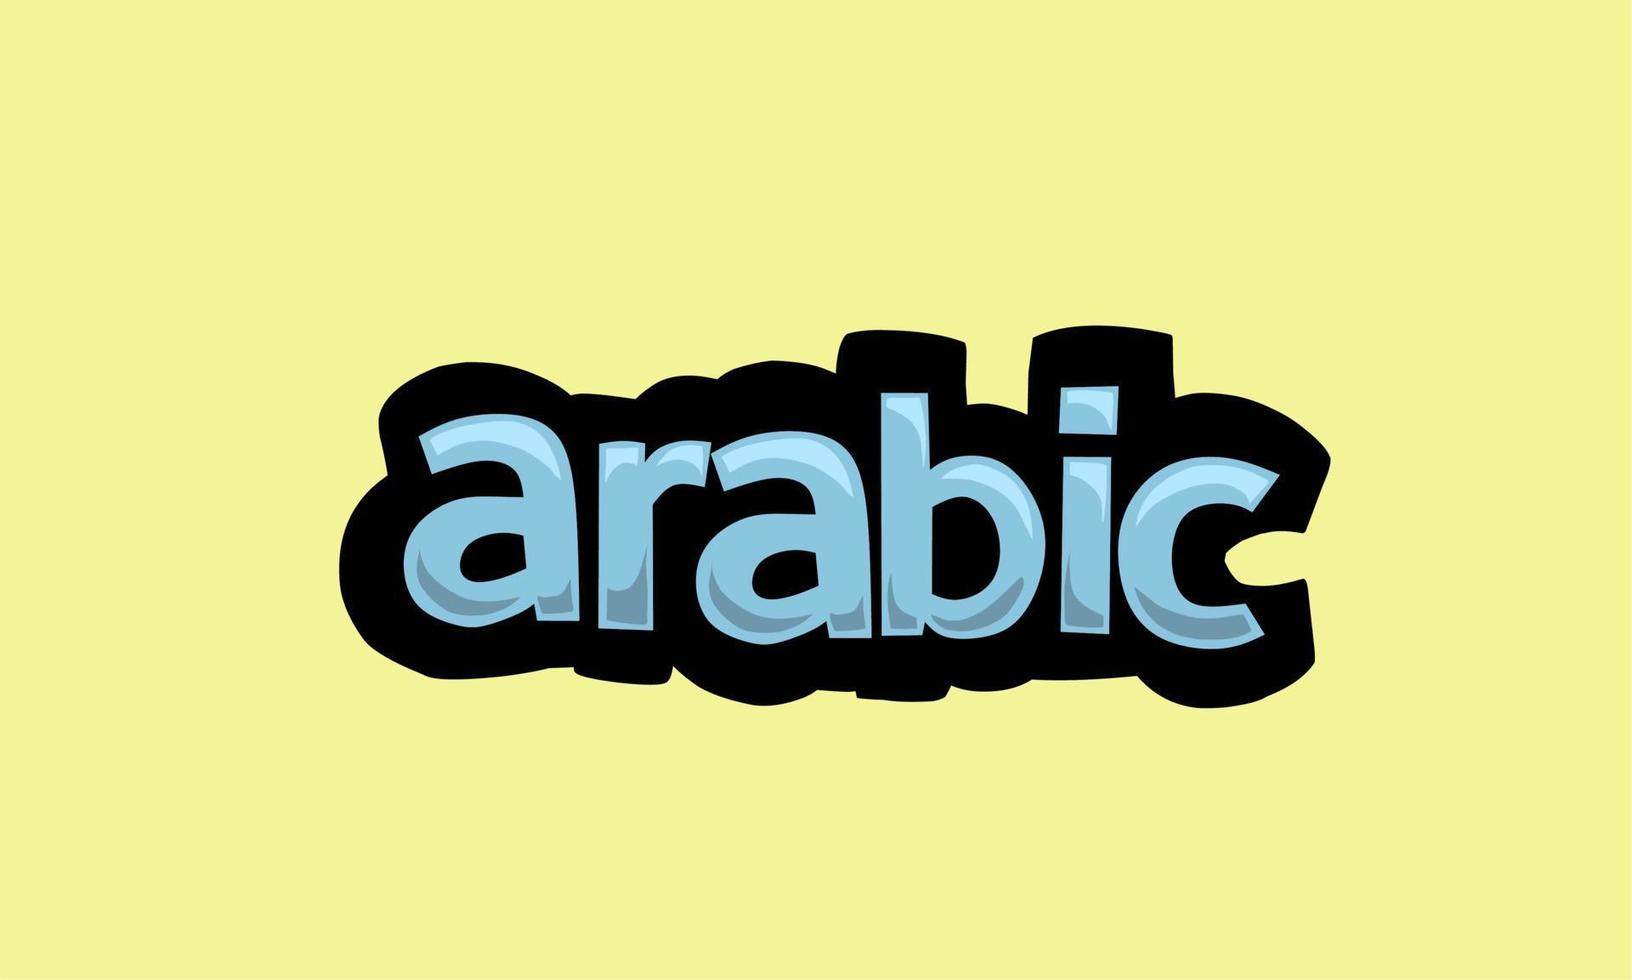 conception de vecteur d'écriture arabe sur fond jaune